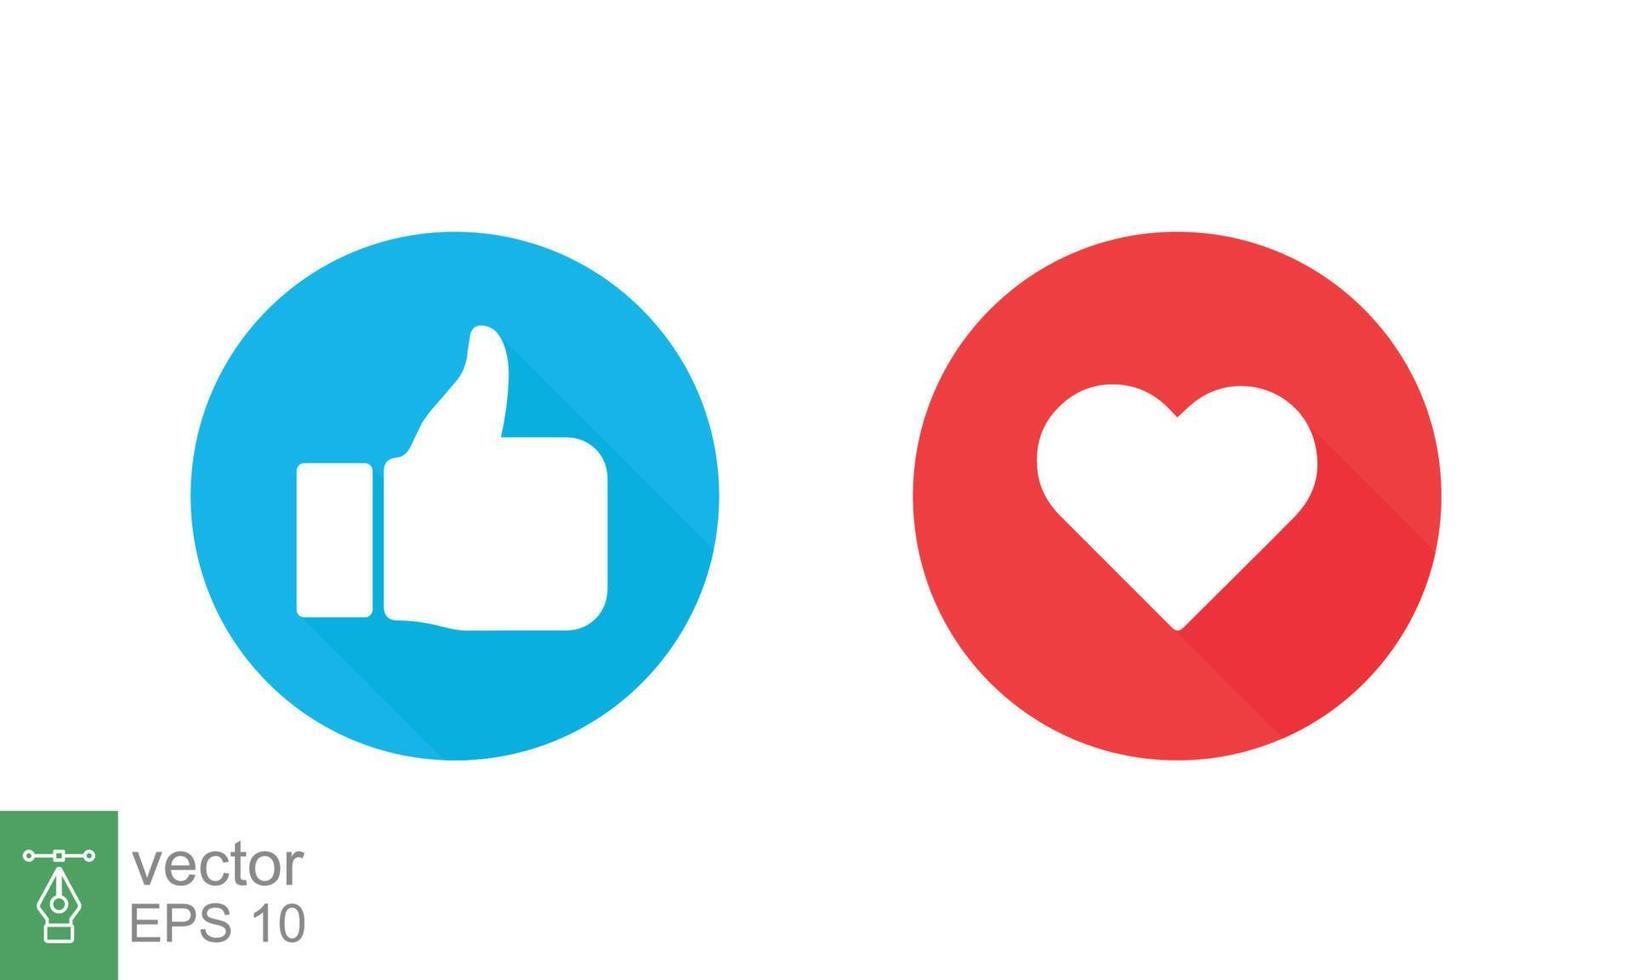 Daumen hoch und Herz, Symbol für soziale Medien. wie, gut, Liebessymbol im blauen und roten Kreisknopf. empathische emotionale Reaktionen. flaches Vektorillustrationsdesign lokalisiert auf weißem Hintergrund. Folge 10. vektor